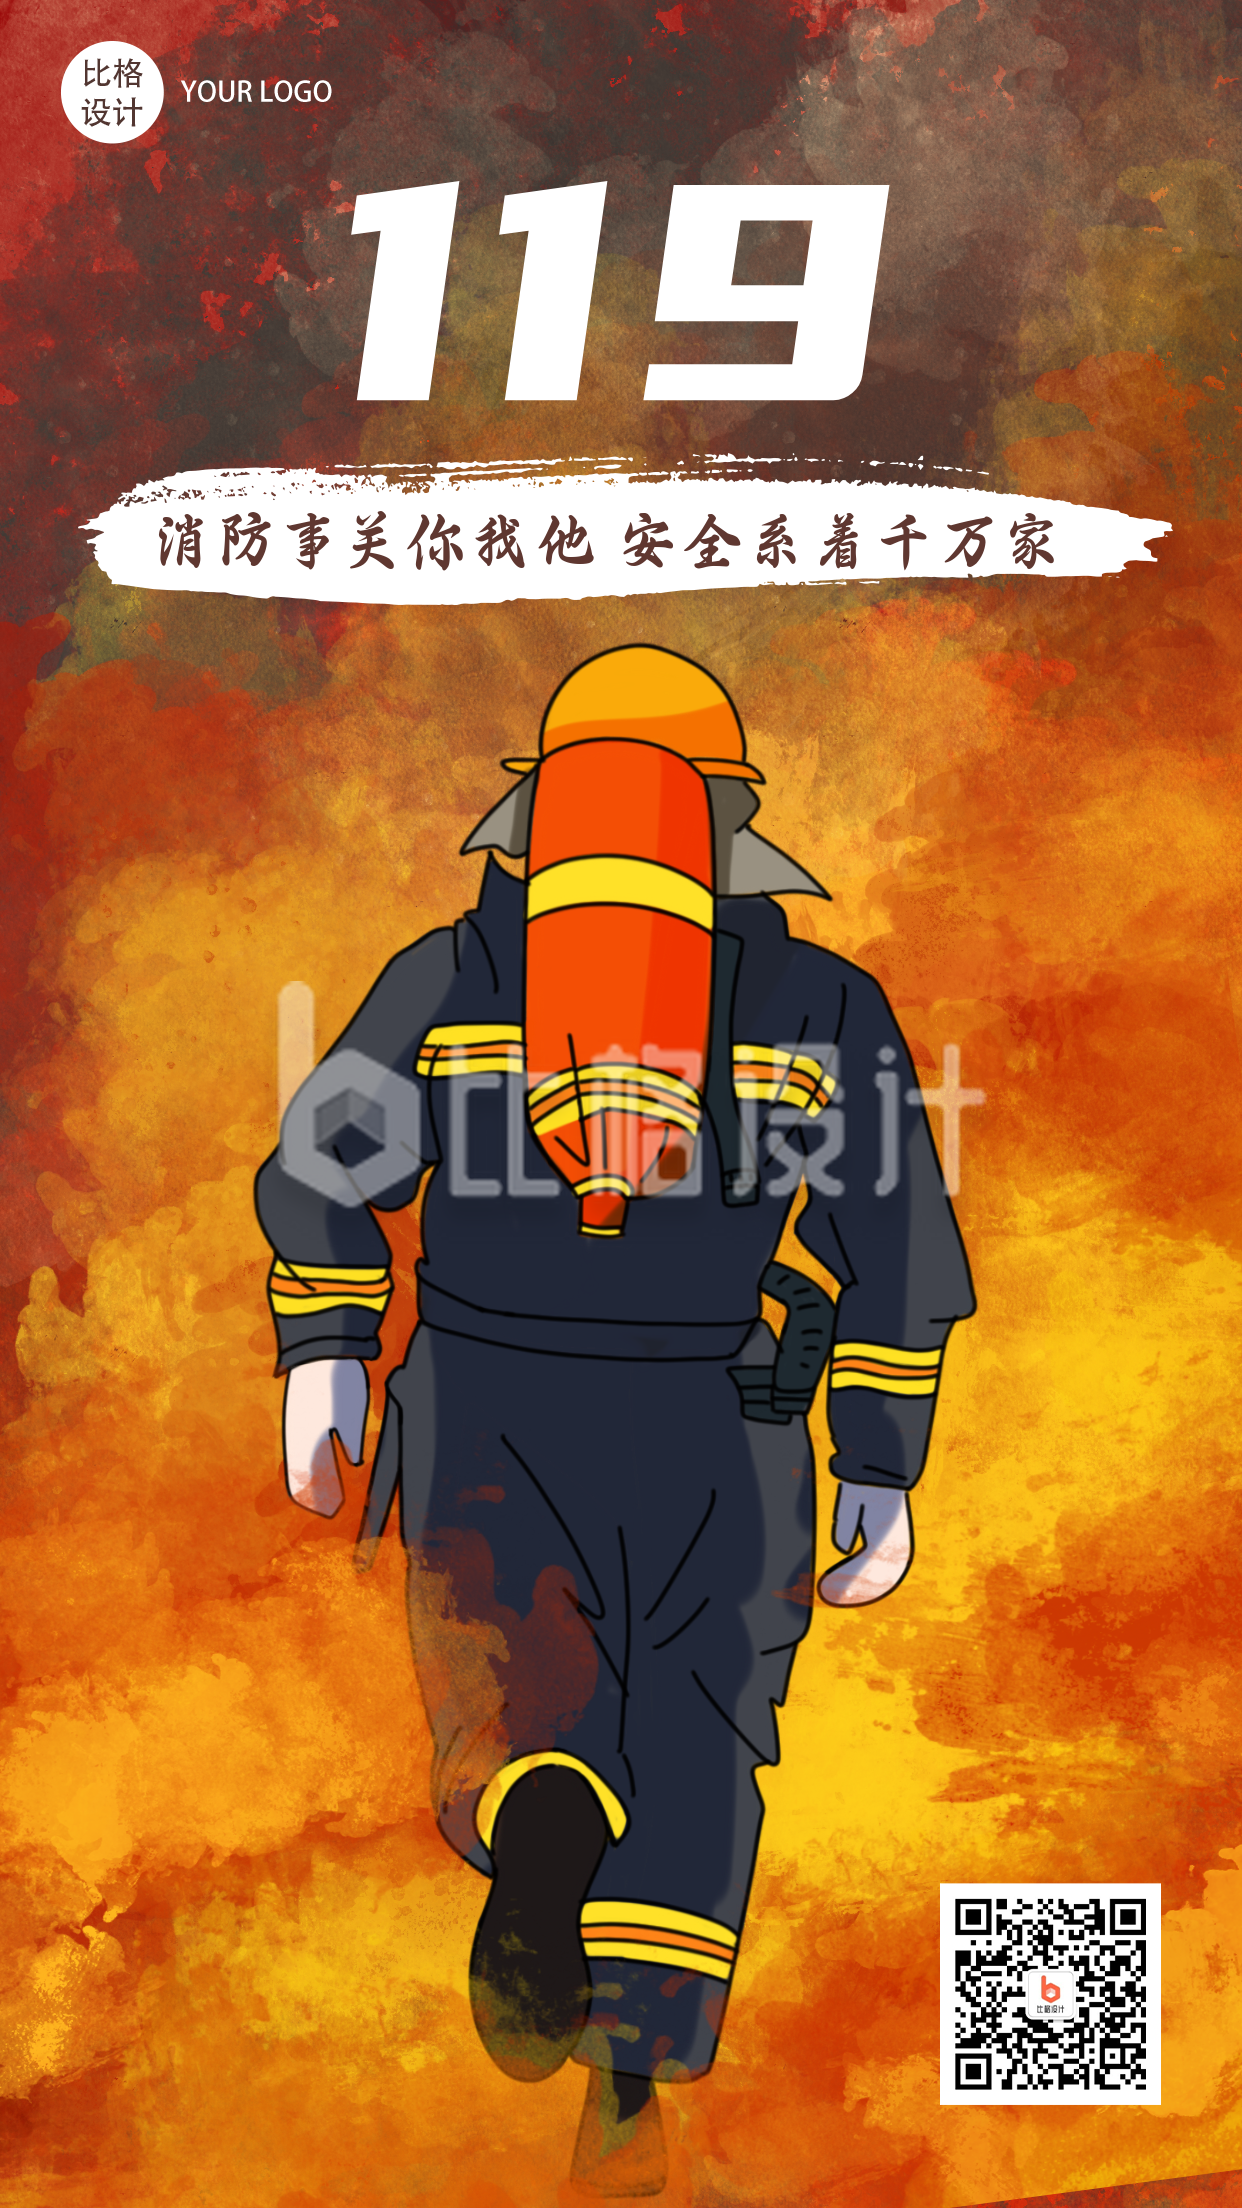 119火警消防日宣传漫画扁平风手机海报